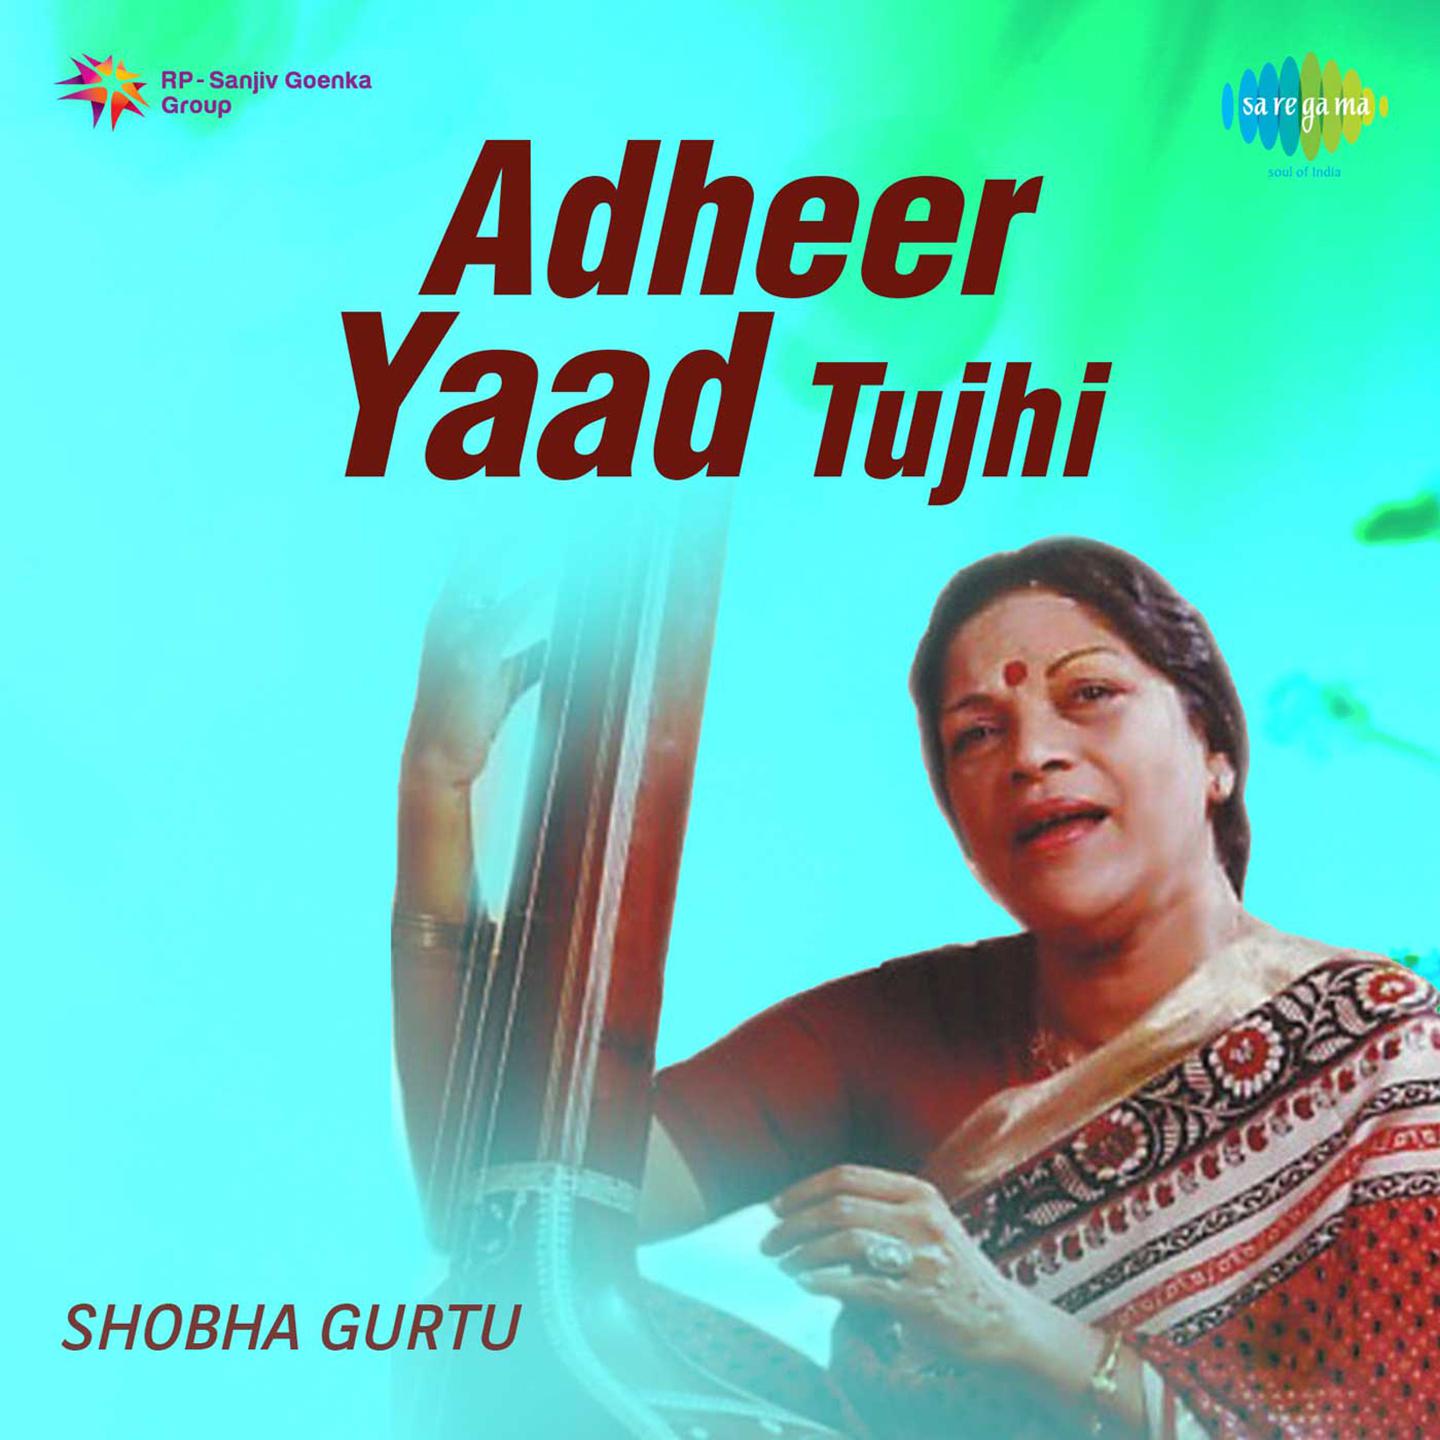 Shobha Gurtu - Tyanich Chhedile Ga